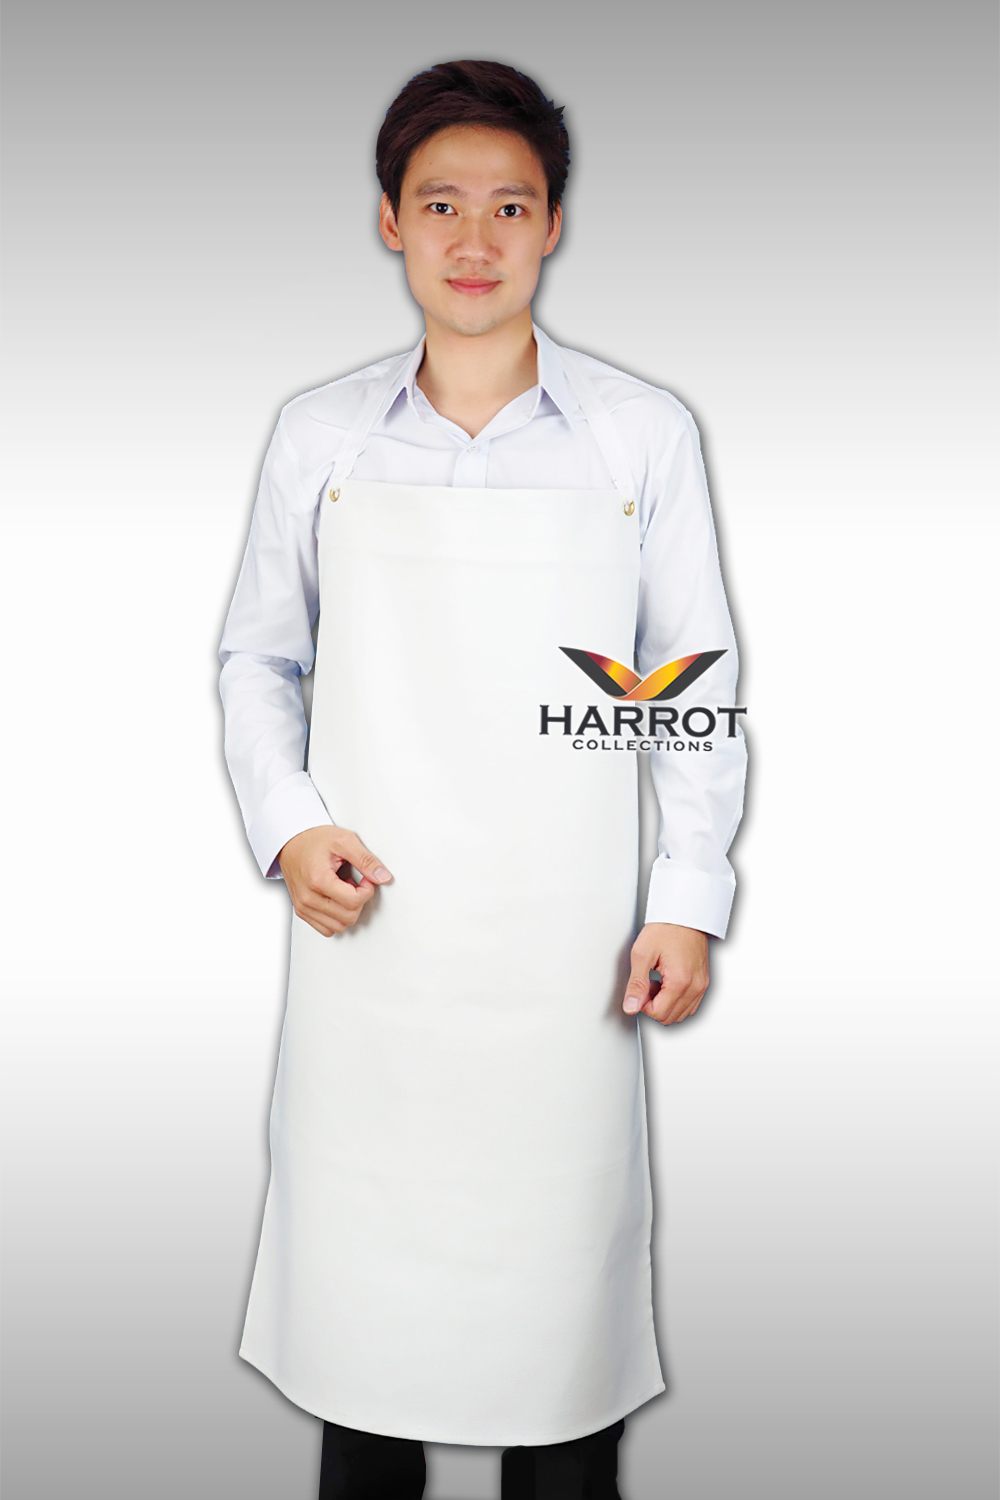 ผ้ากันเปื้อน ผ้ากันเปื้อนเชฟ ผ้ากันเปื้อนพ่อครัว ผ้ากันเปื้อนกุ๊ก ผ้ากันเปื้อนเสิร์ฟ หนังเทียม สีขาว แบบเต็มตัว (FSA0801)